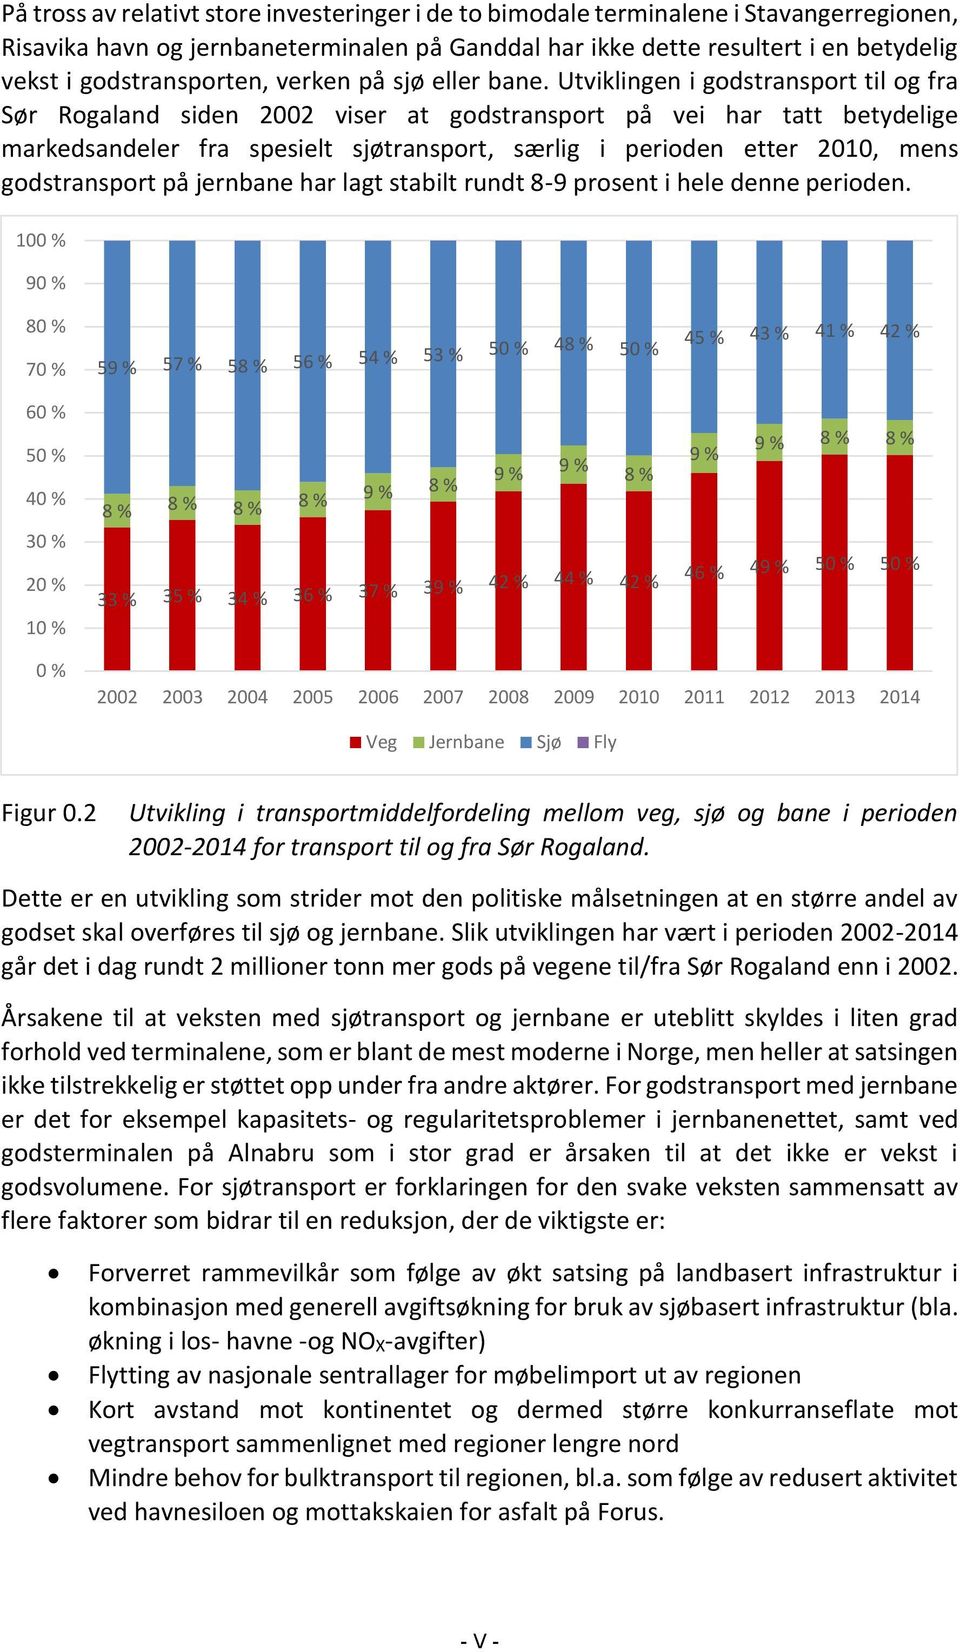 Utviklingen i godstransport til og fra Sør Rogaland siden 2002 viser at godstransport på vei har tatt betydelige markedsandeler fra spesielt sjøtransport, særlig i perioden etter 2010, mens